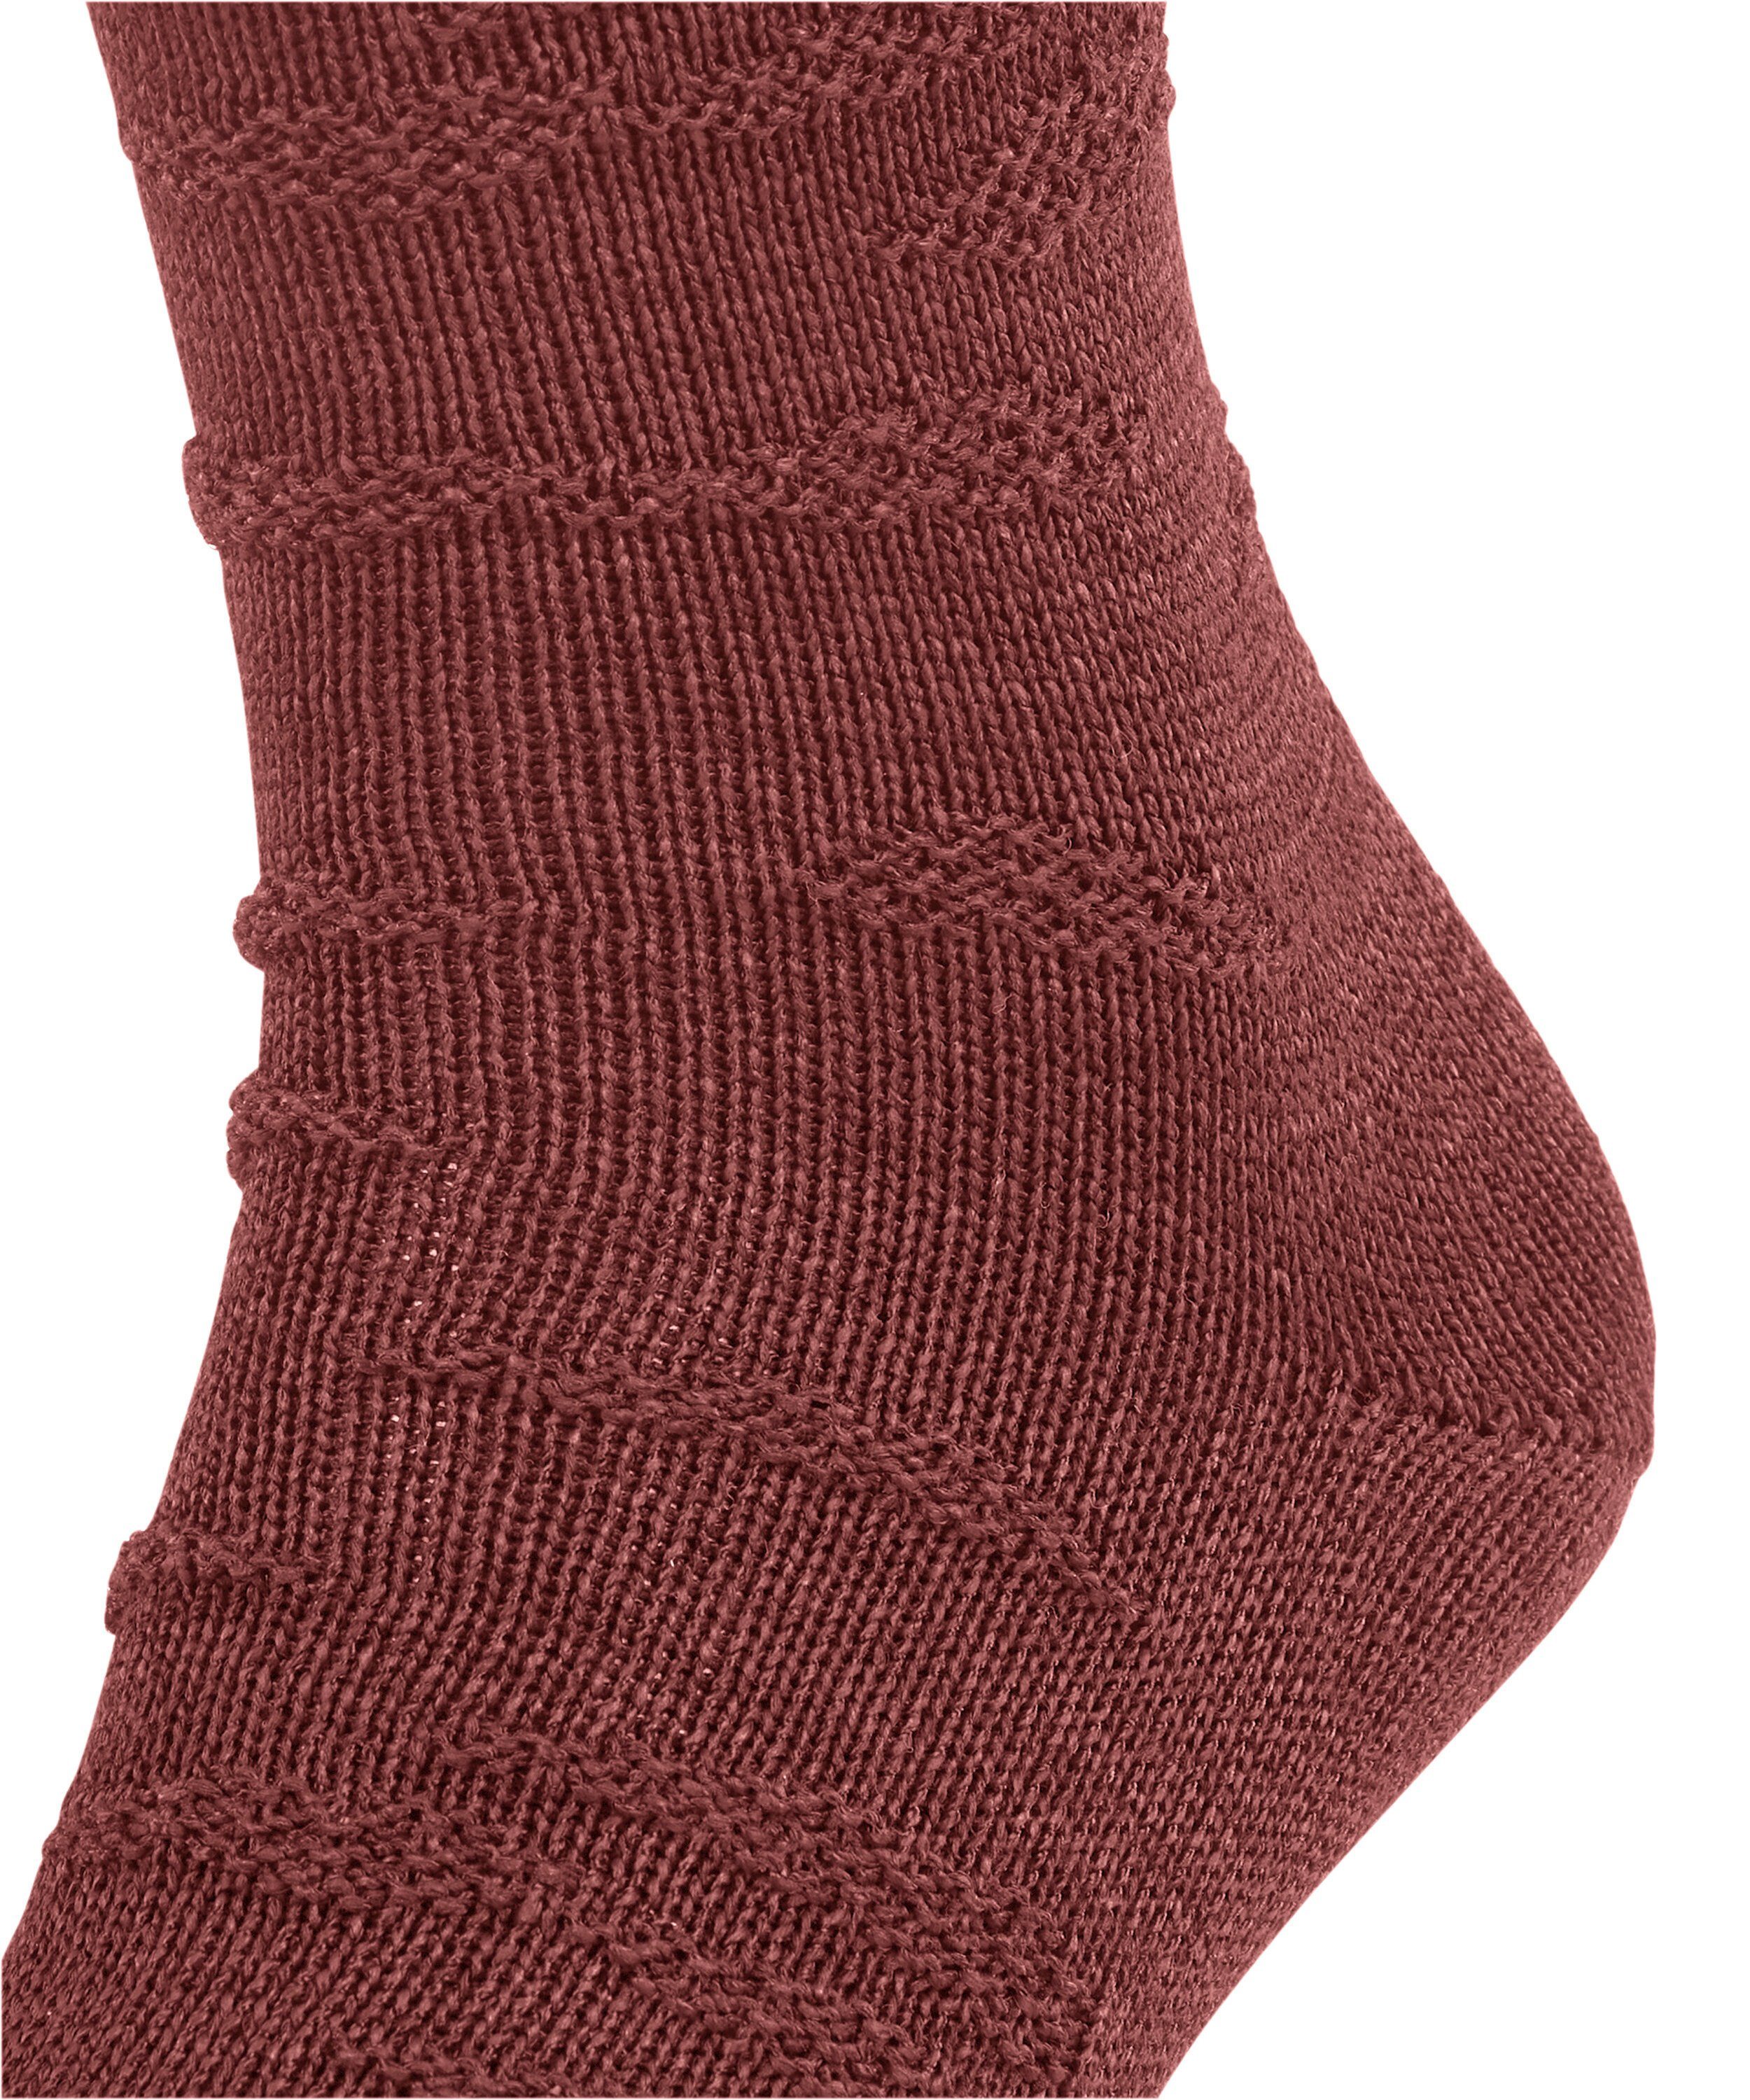 (1-Paar) FALKE Socken (8214) Packaging rust Sensitive